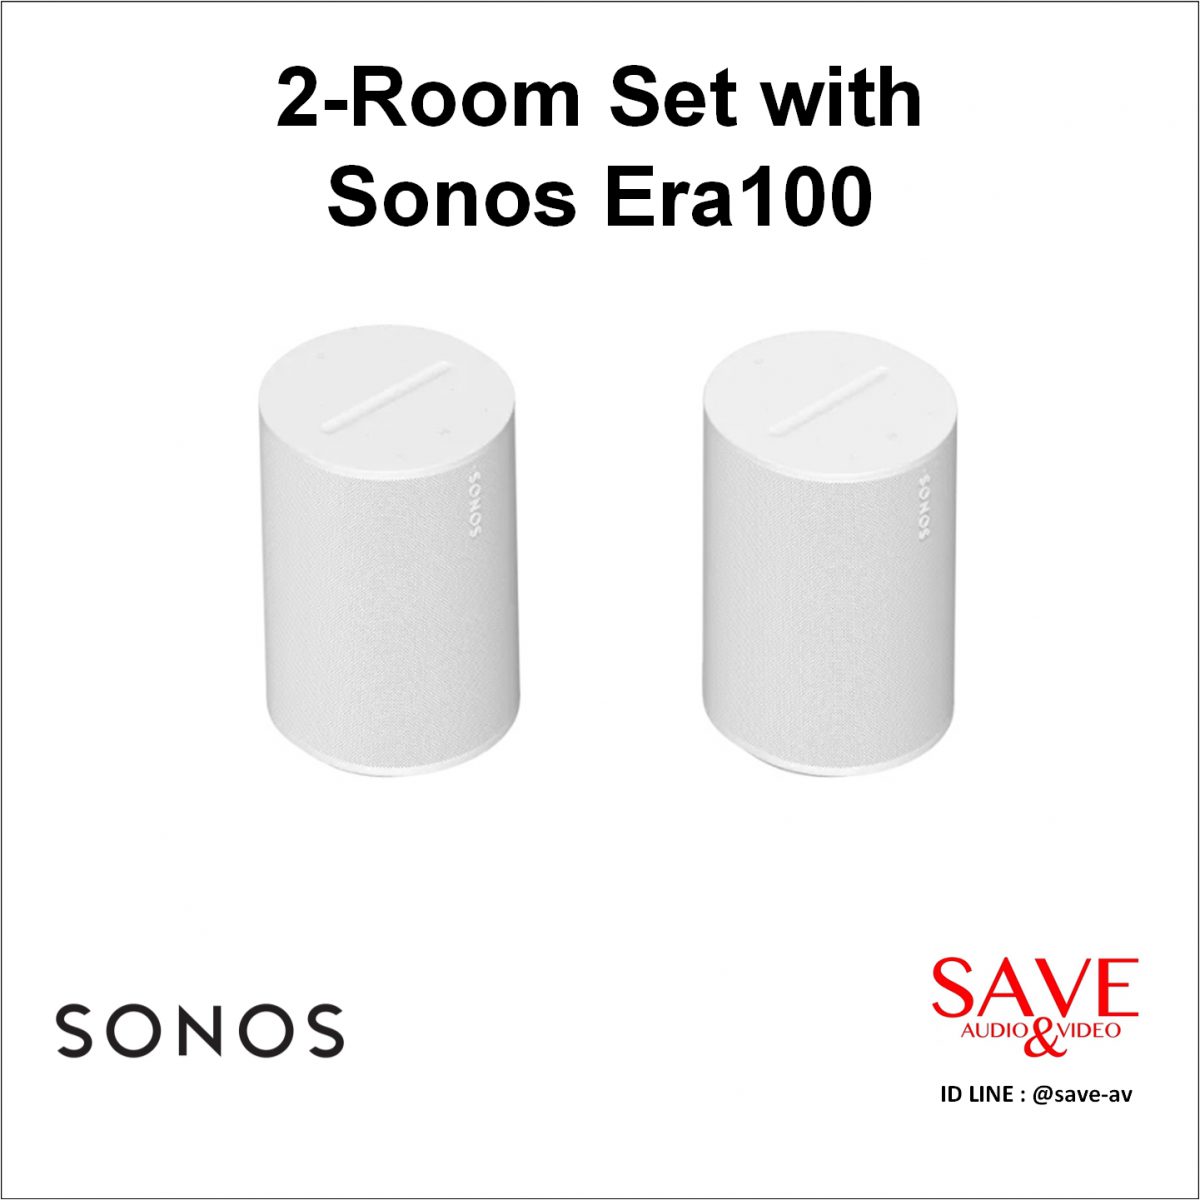 Sonos Thaialnd 2-Room Set with Sonos Era100